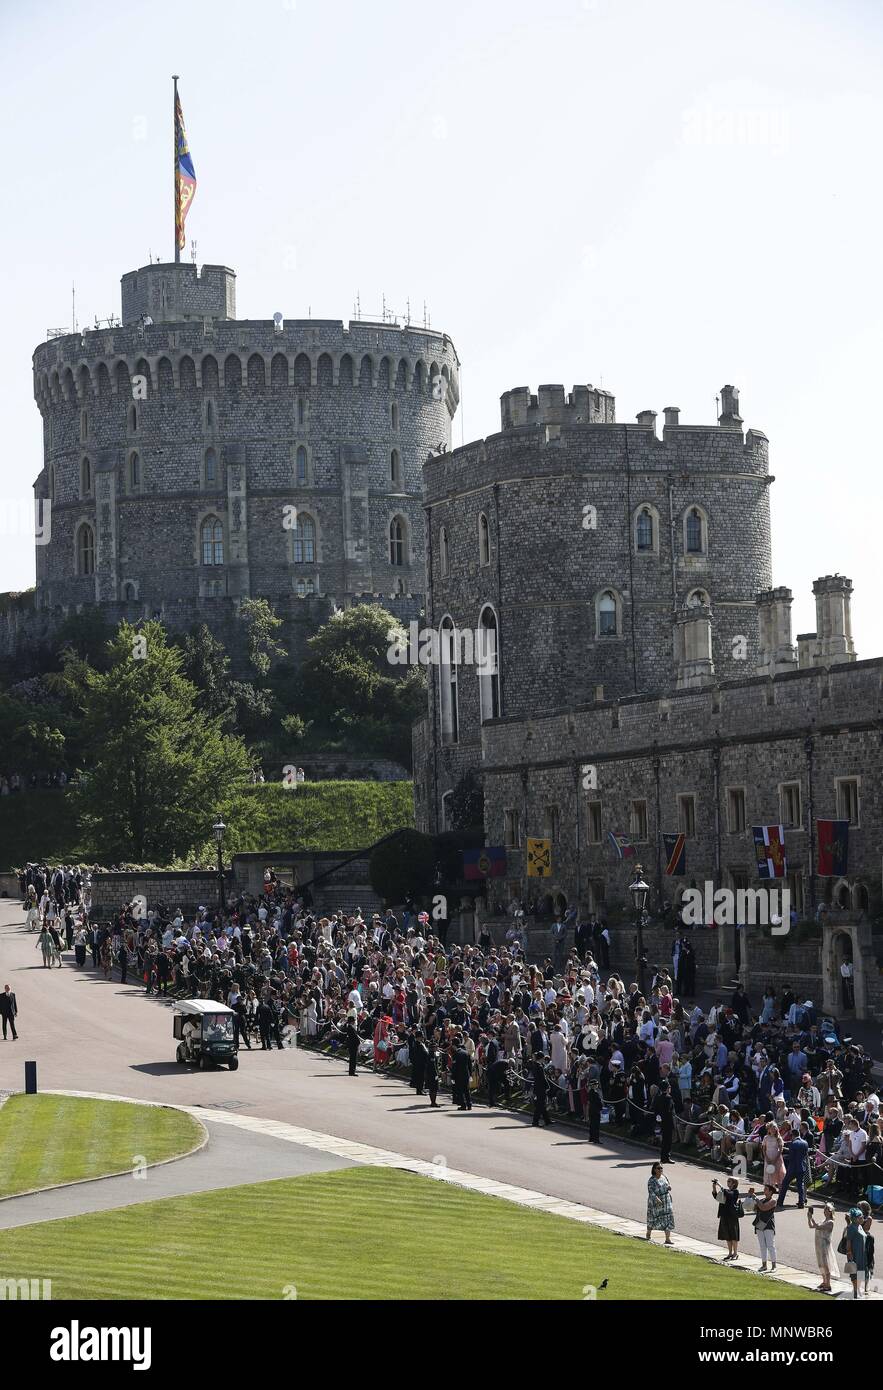 (180519) -- WINDSOR, mayo 19, 2018 (Xinhua) -- Invitados esperan en el Castillo de Windsor para la boda real del prÃncipe Enrique y su prometida Meghan Markle, en Windsor, Reino Unido, el 19 de mayo de 2018.  Cordon Press Stock Photo